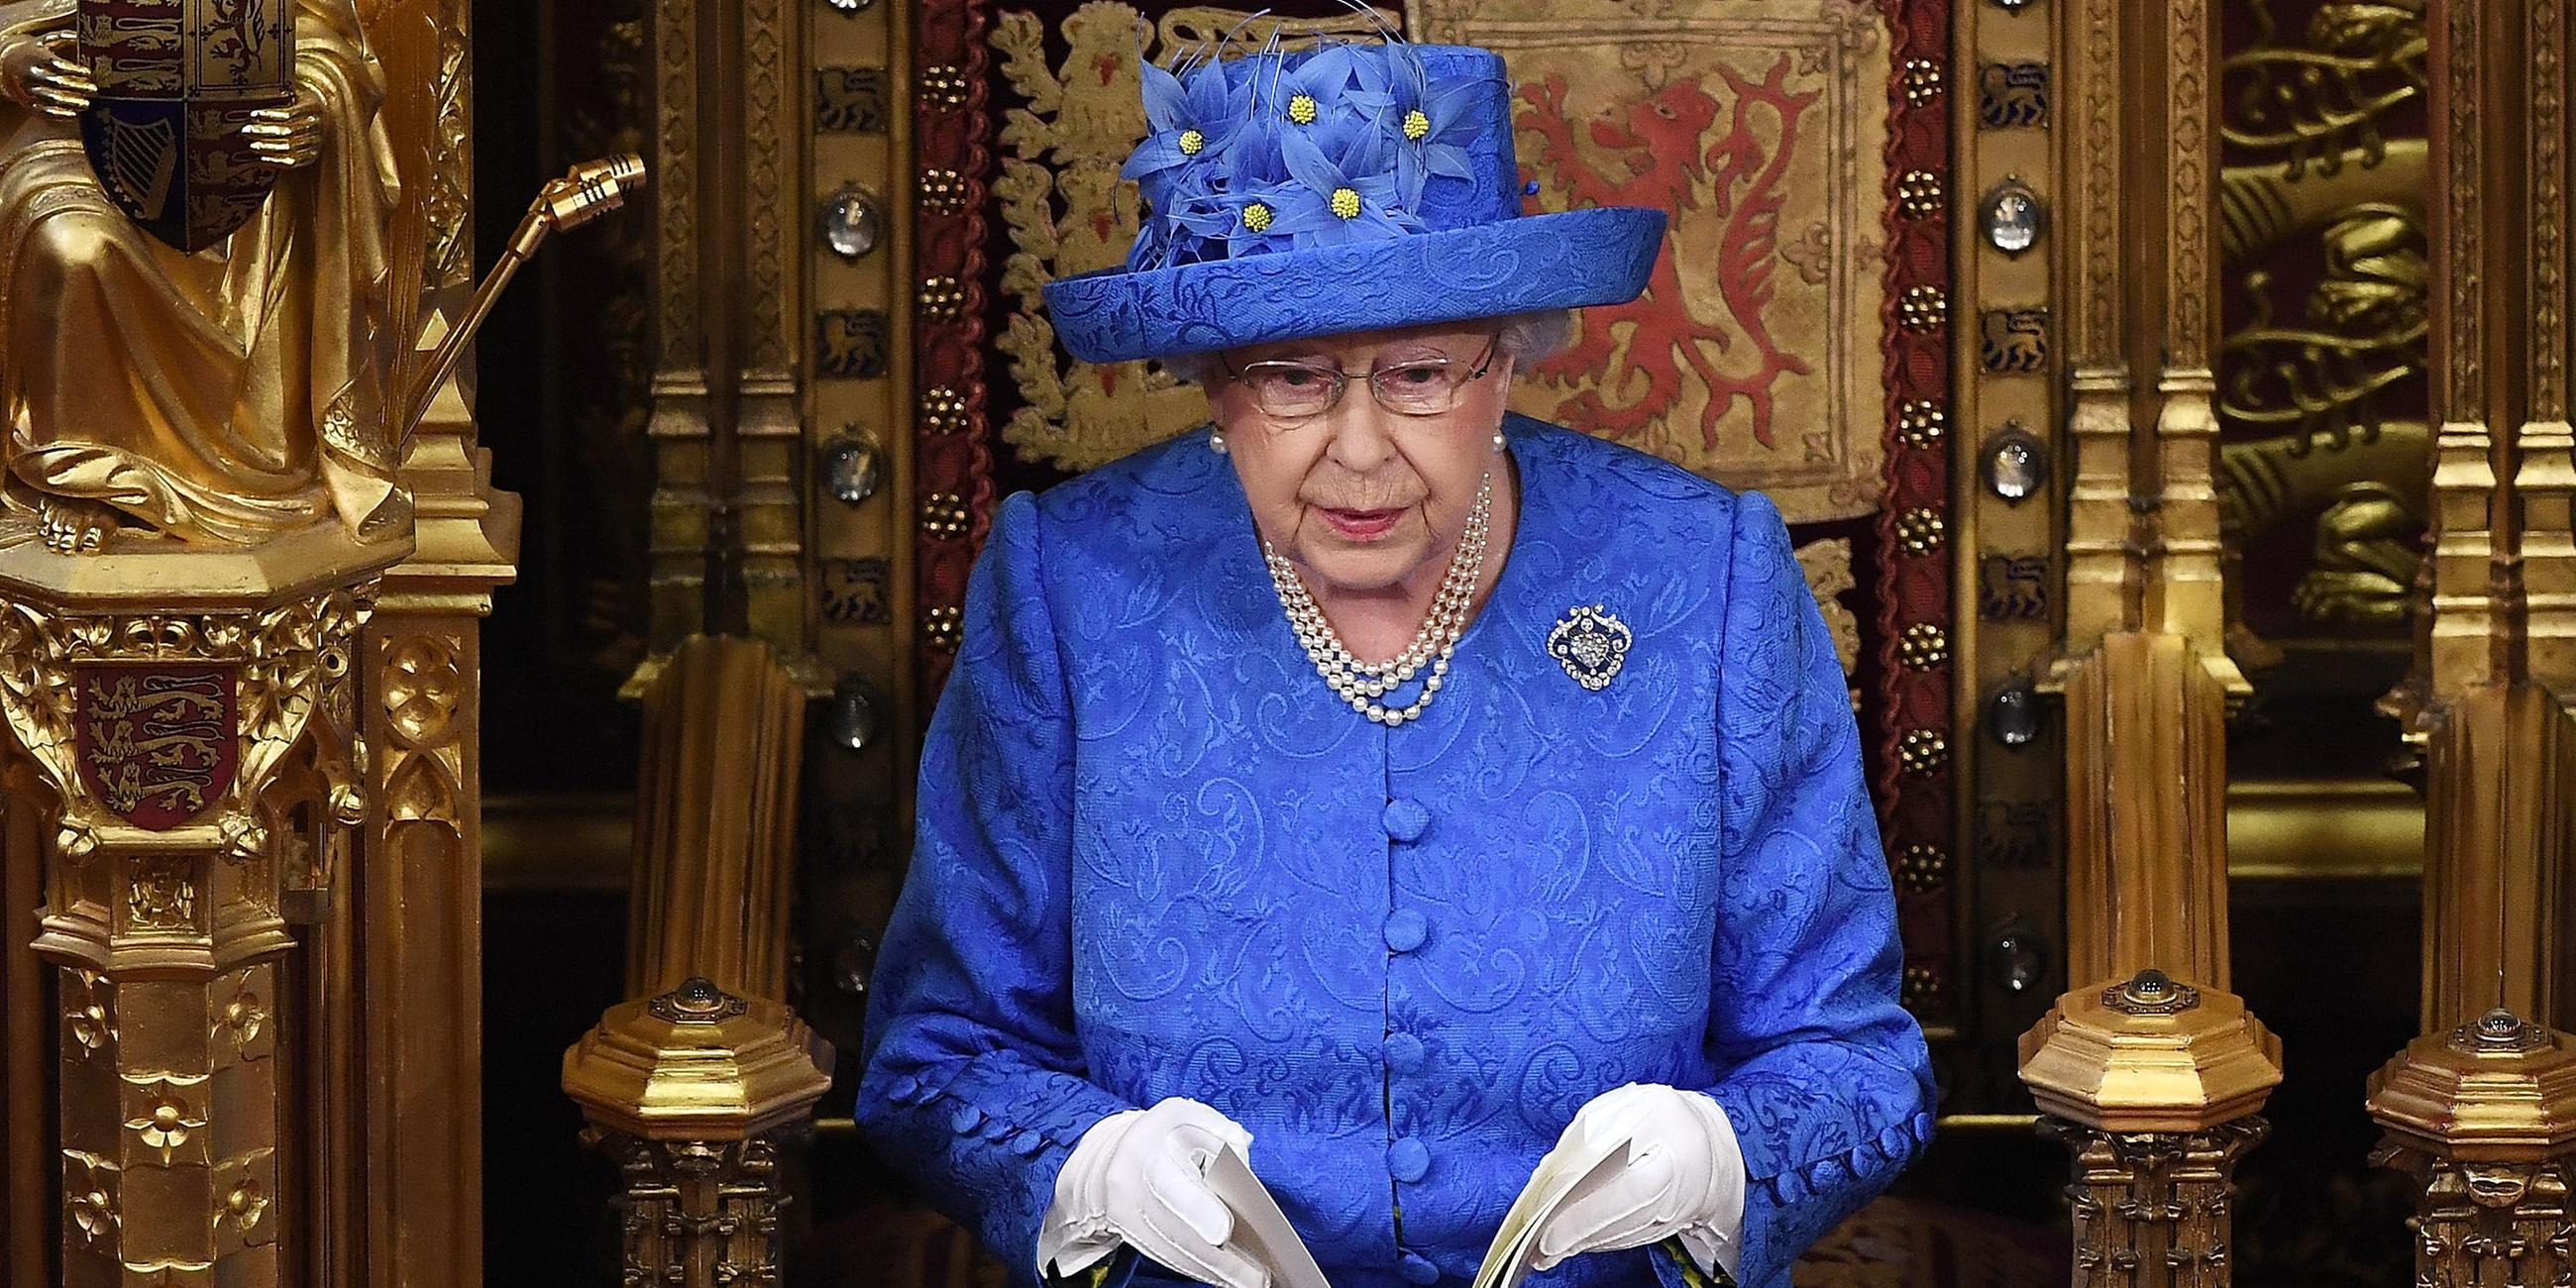 Das Bild zeigt Queen Elizabeth II mit einem blauen Hut mit gelben Blüten